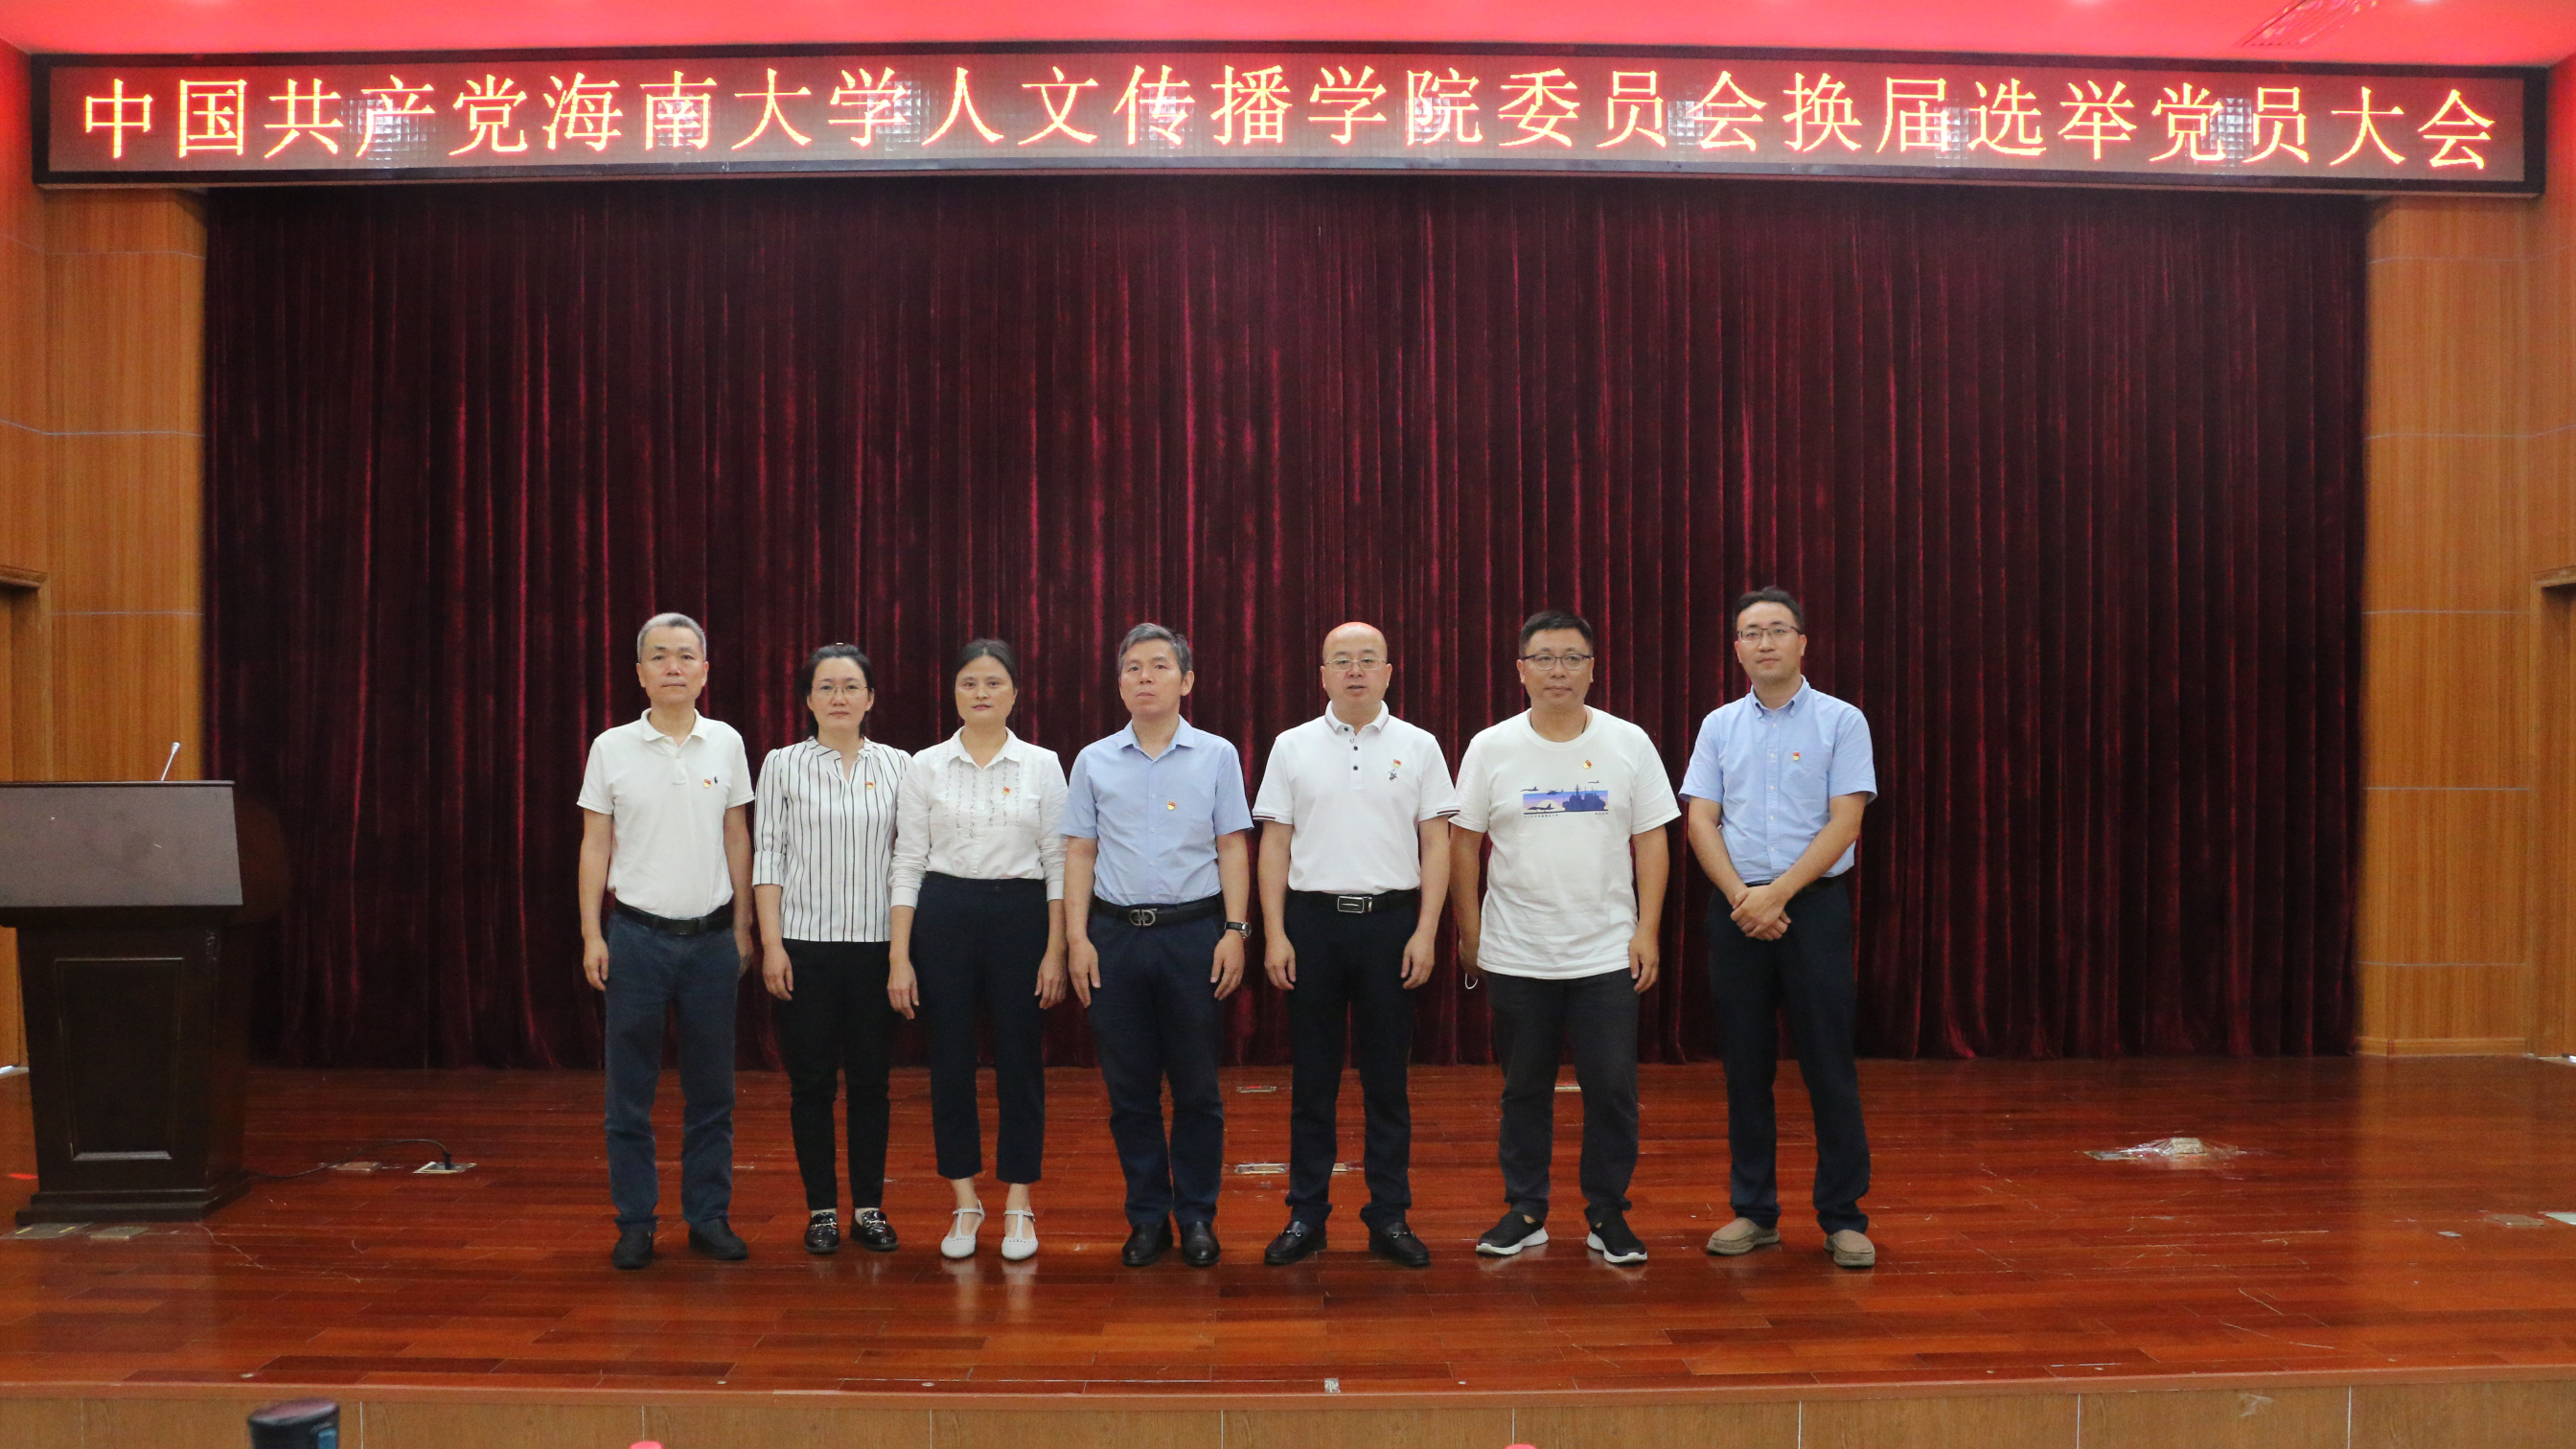 中共海南大学人文传播学院委员会换届选举党员大会顺利召开